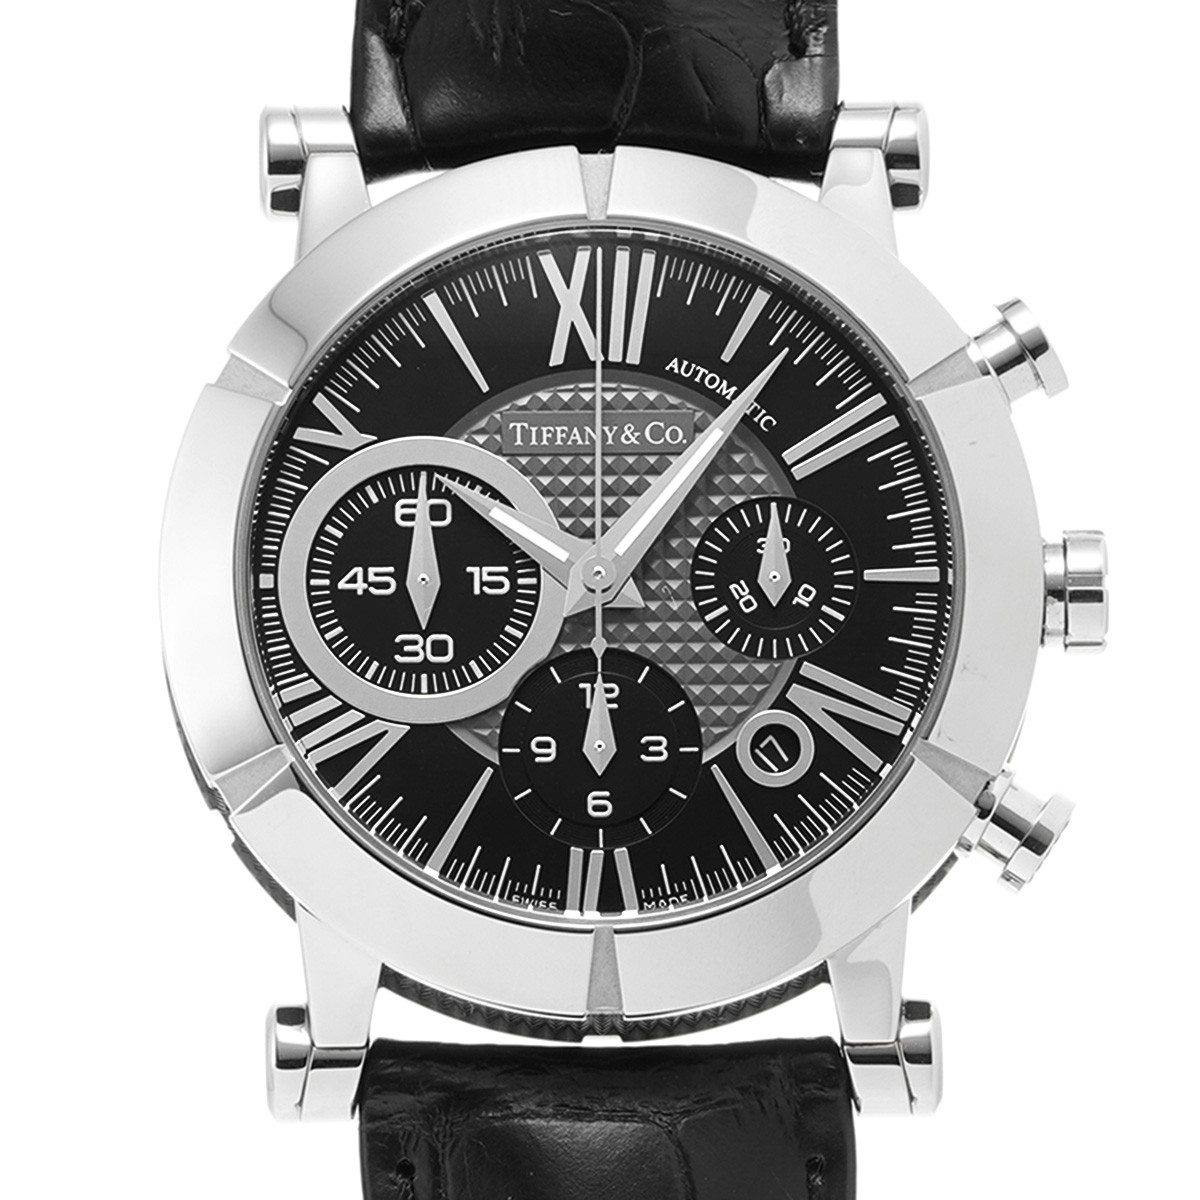 ティファニー アトラス ジェント クロノグラフ Z1000.82.12A10A71A ブラック/グレー メンズ 時計 【中古】【wristwatch】